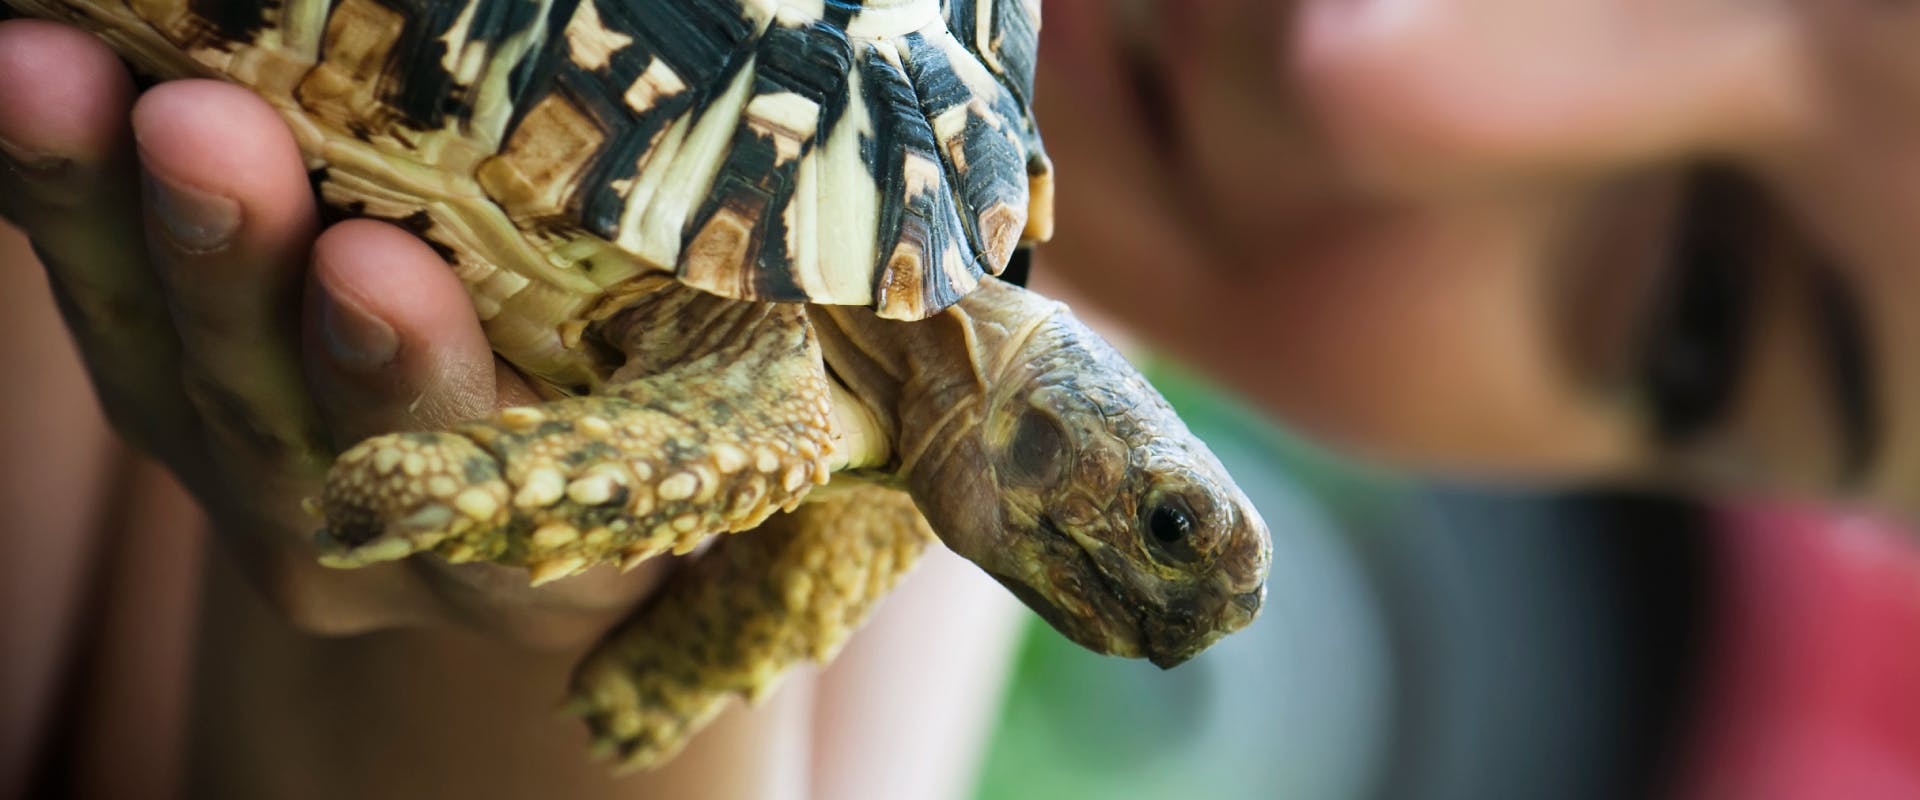 An exotic pet sitter handles a tortoise.